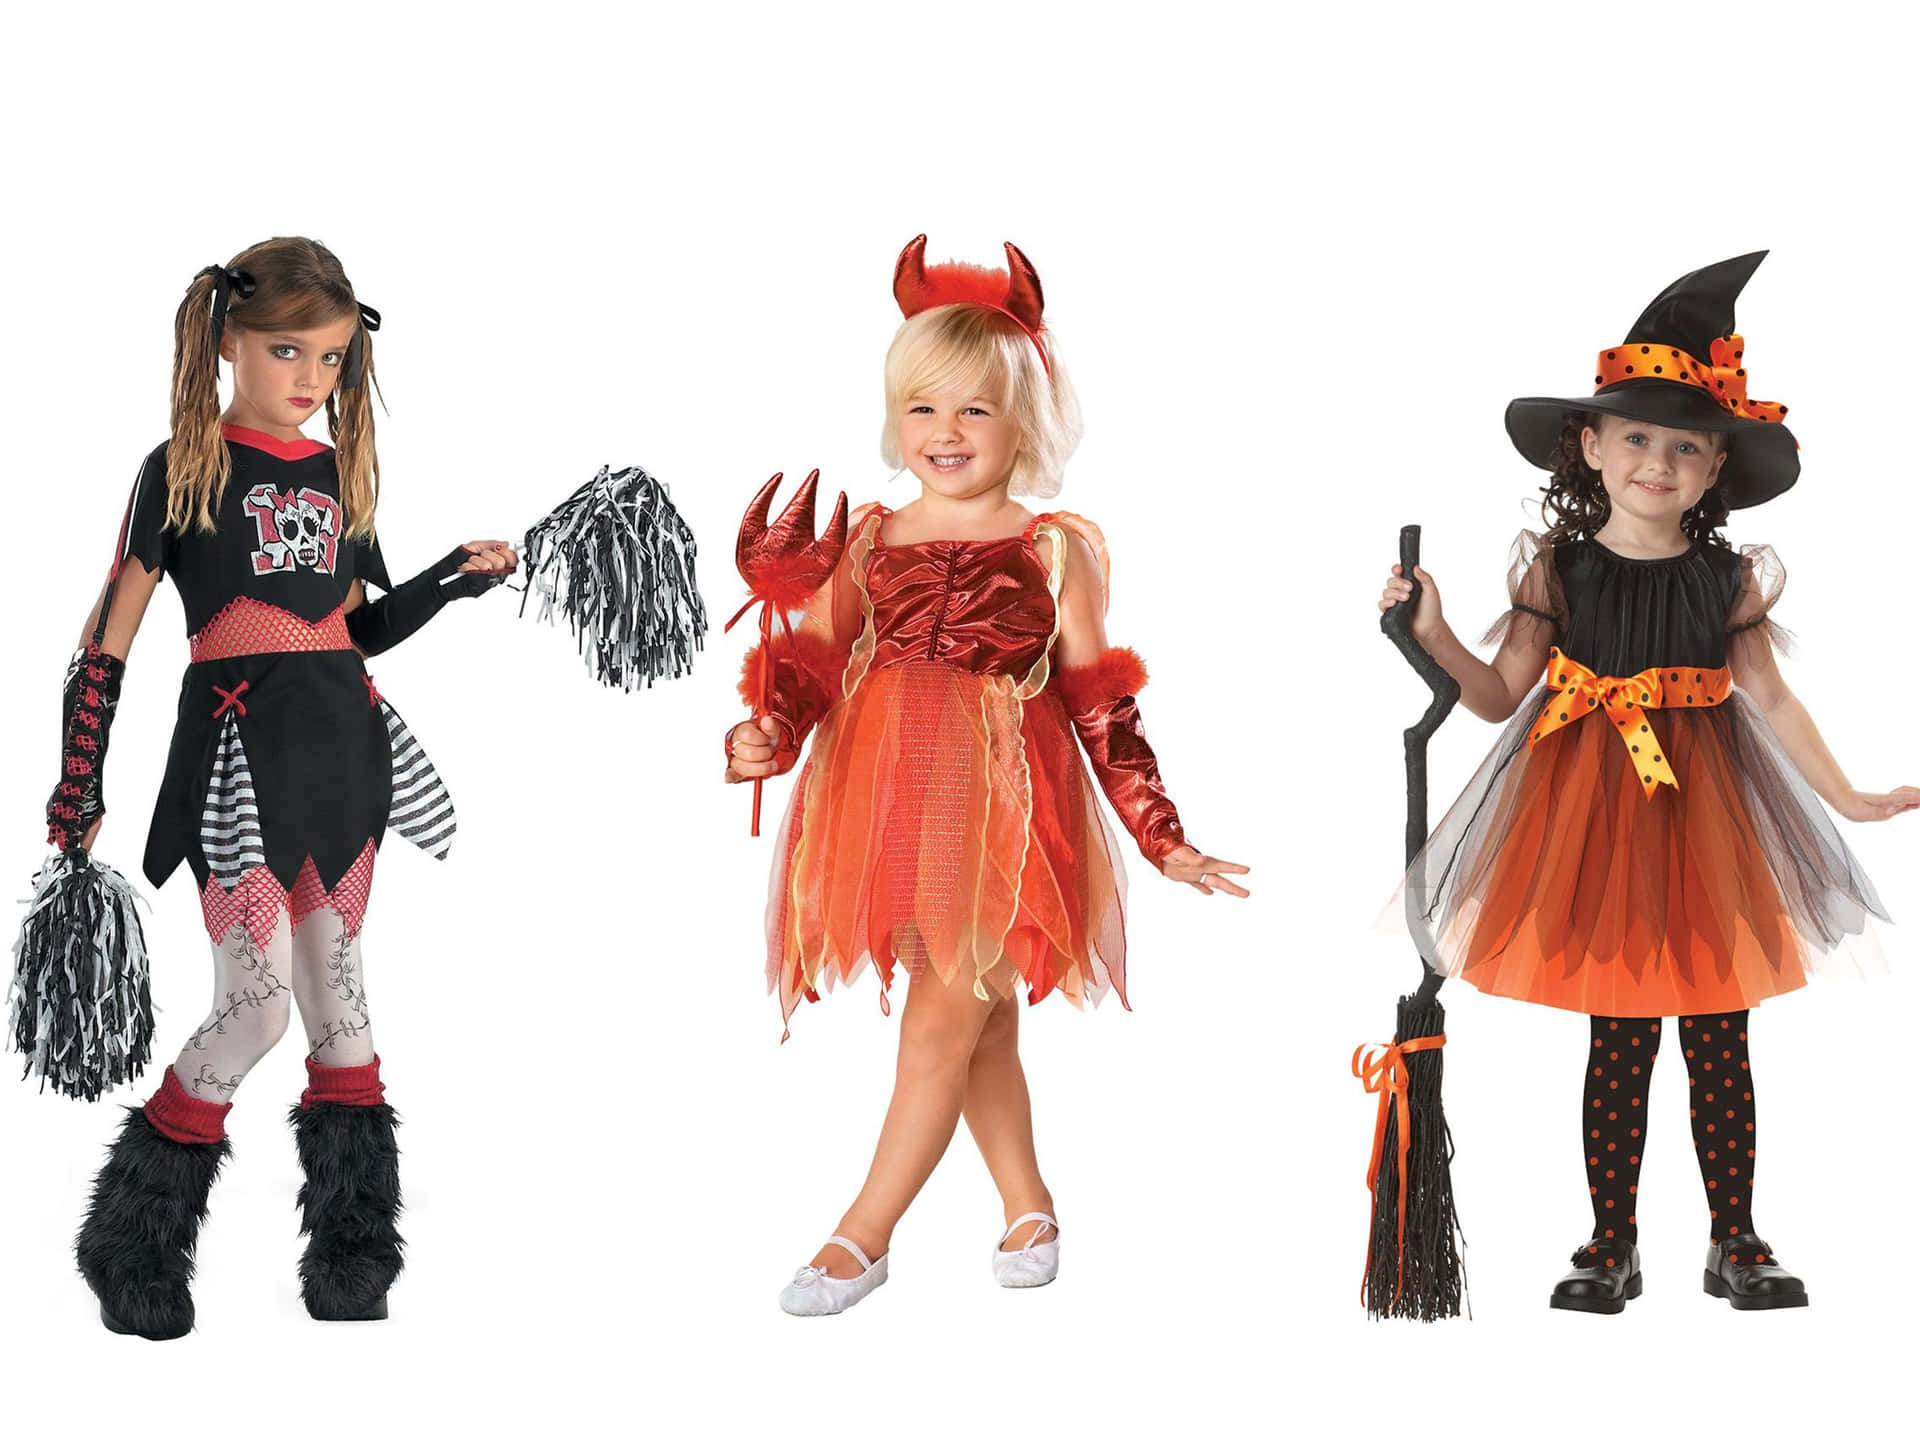 Mostrail Tuo Spirito Di Halloween Con Stile Indossando Un Costume Spaventoso!